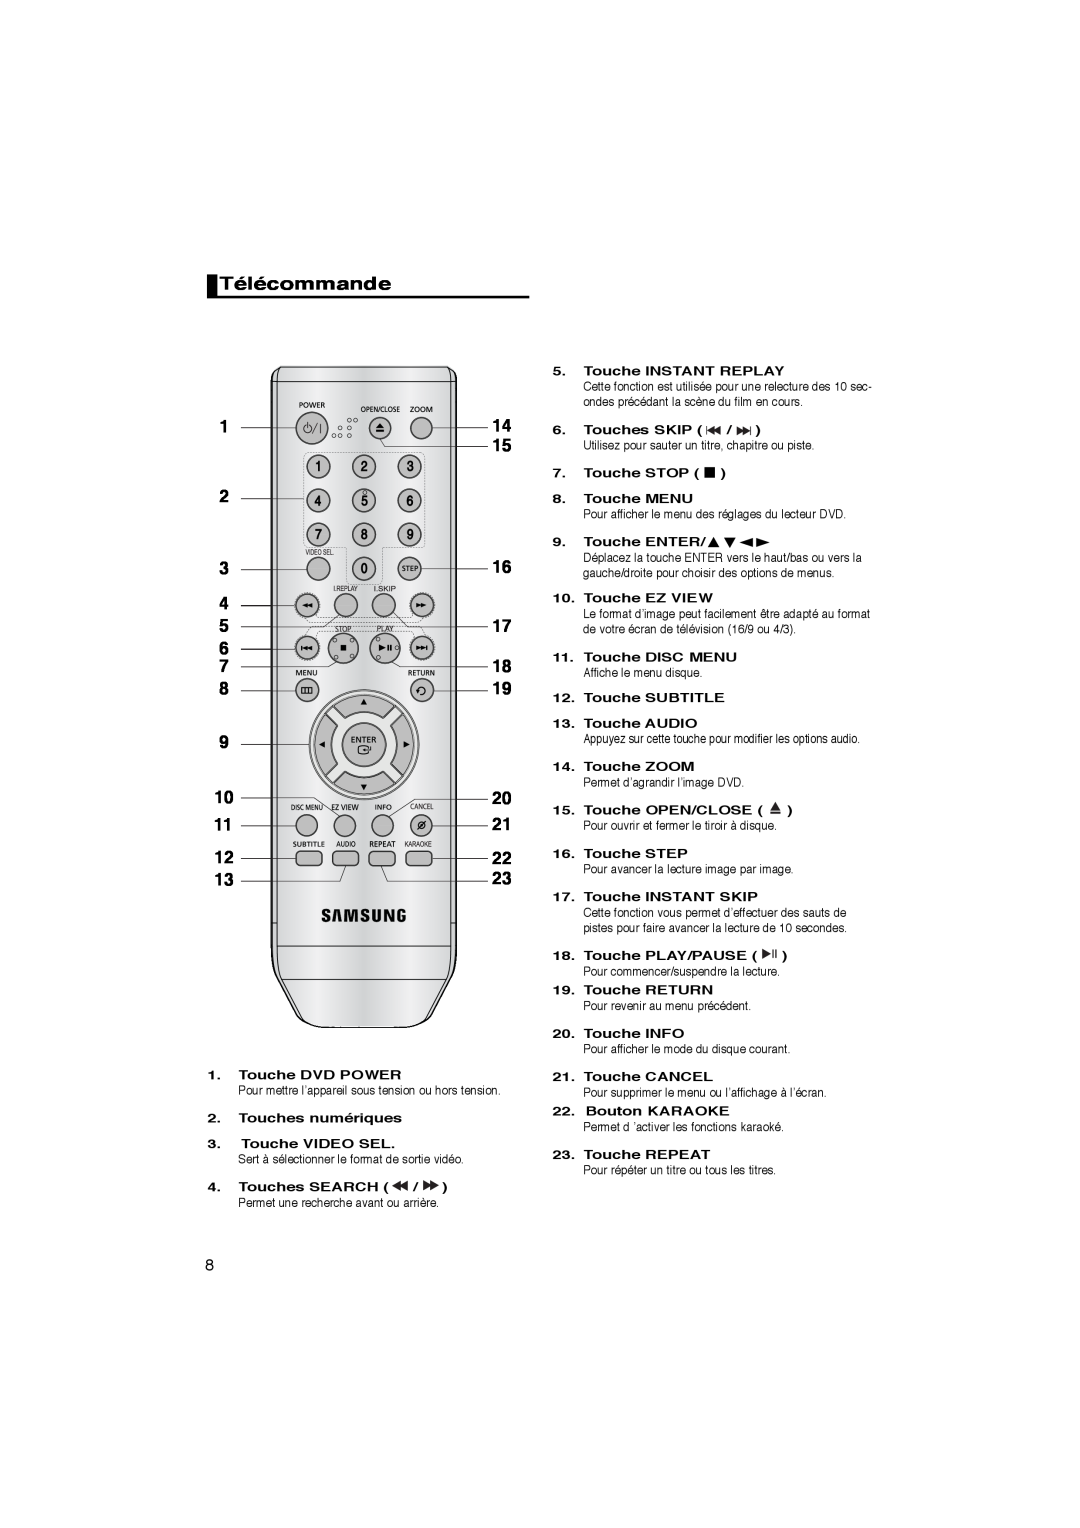 Samsung DVD-P260K/AFR manual Télécommande, Touche DVD POWER, Touches numériques 3. Touche VIDEO SEL, Touche INSTANT REPLAY 